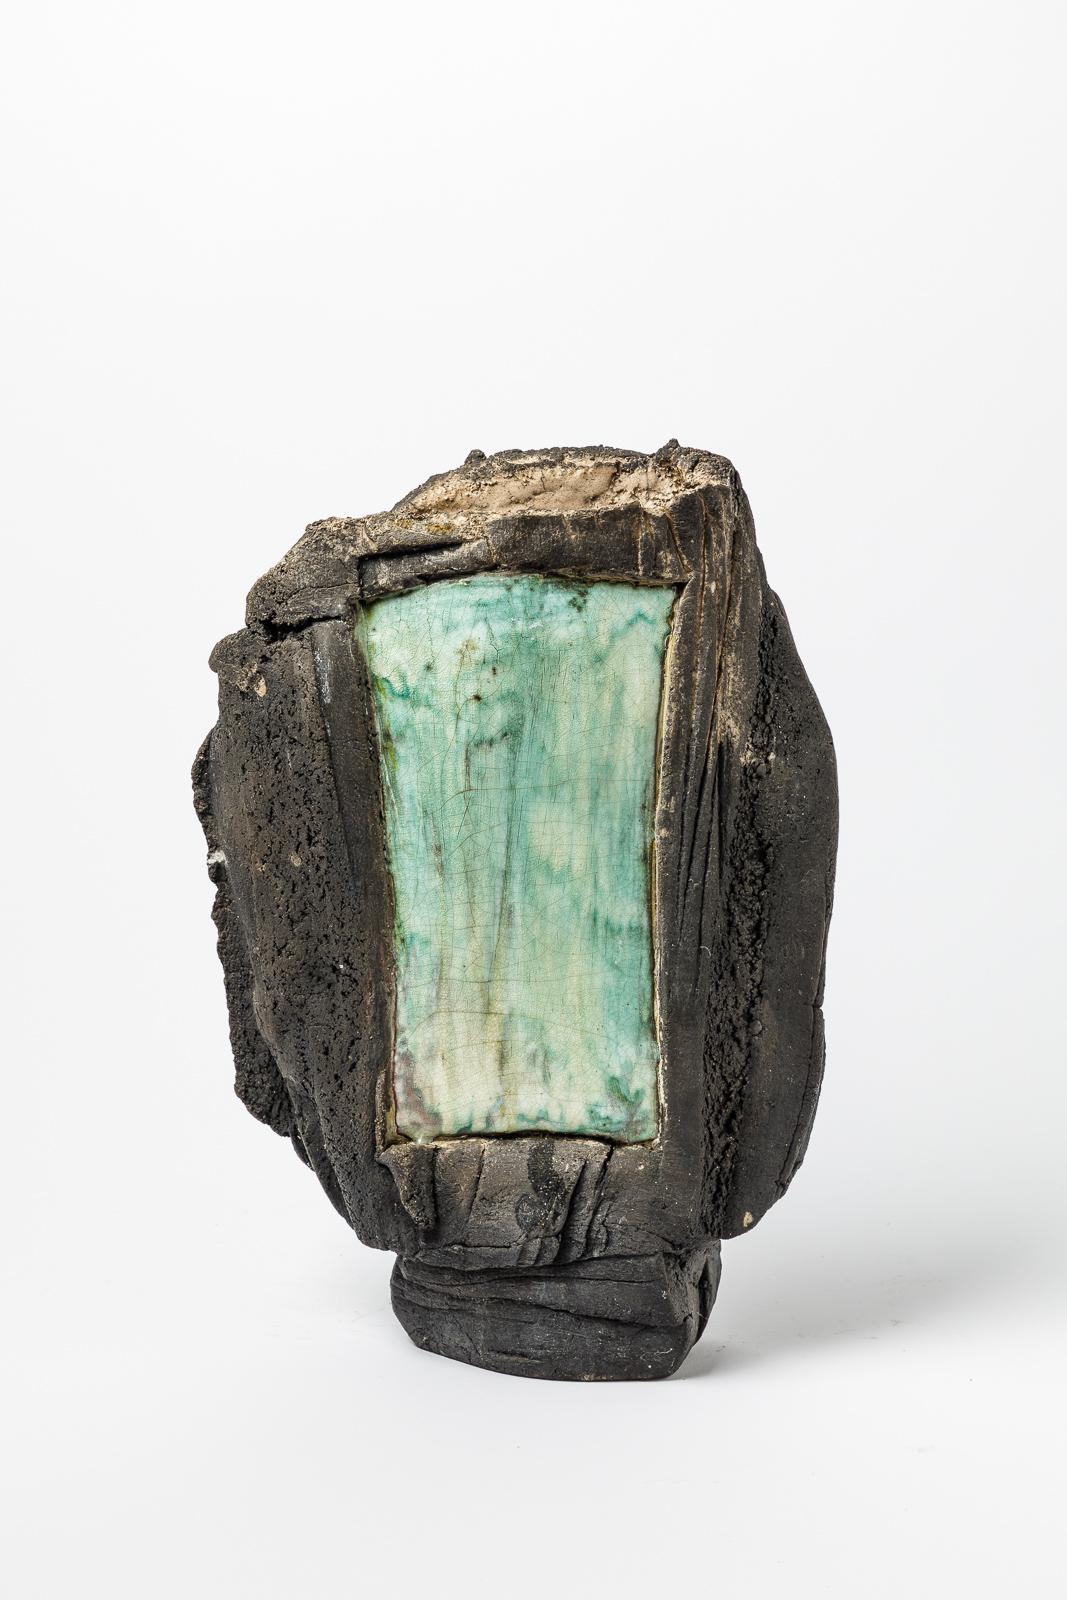 Son A.

Vase en céramique fabriqué à la main par His

Réalisé vers 1980

Condition originale parfaite

Couleurs de la céramique verte et noire

signé 

Mesures : Hauteur 36 cm
Grand 27 cm.
 